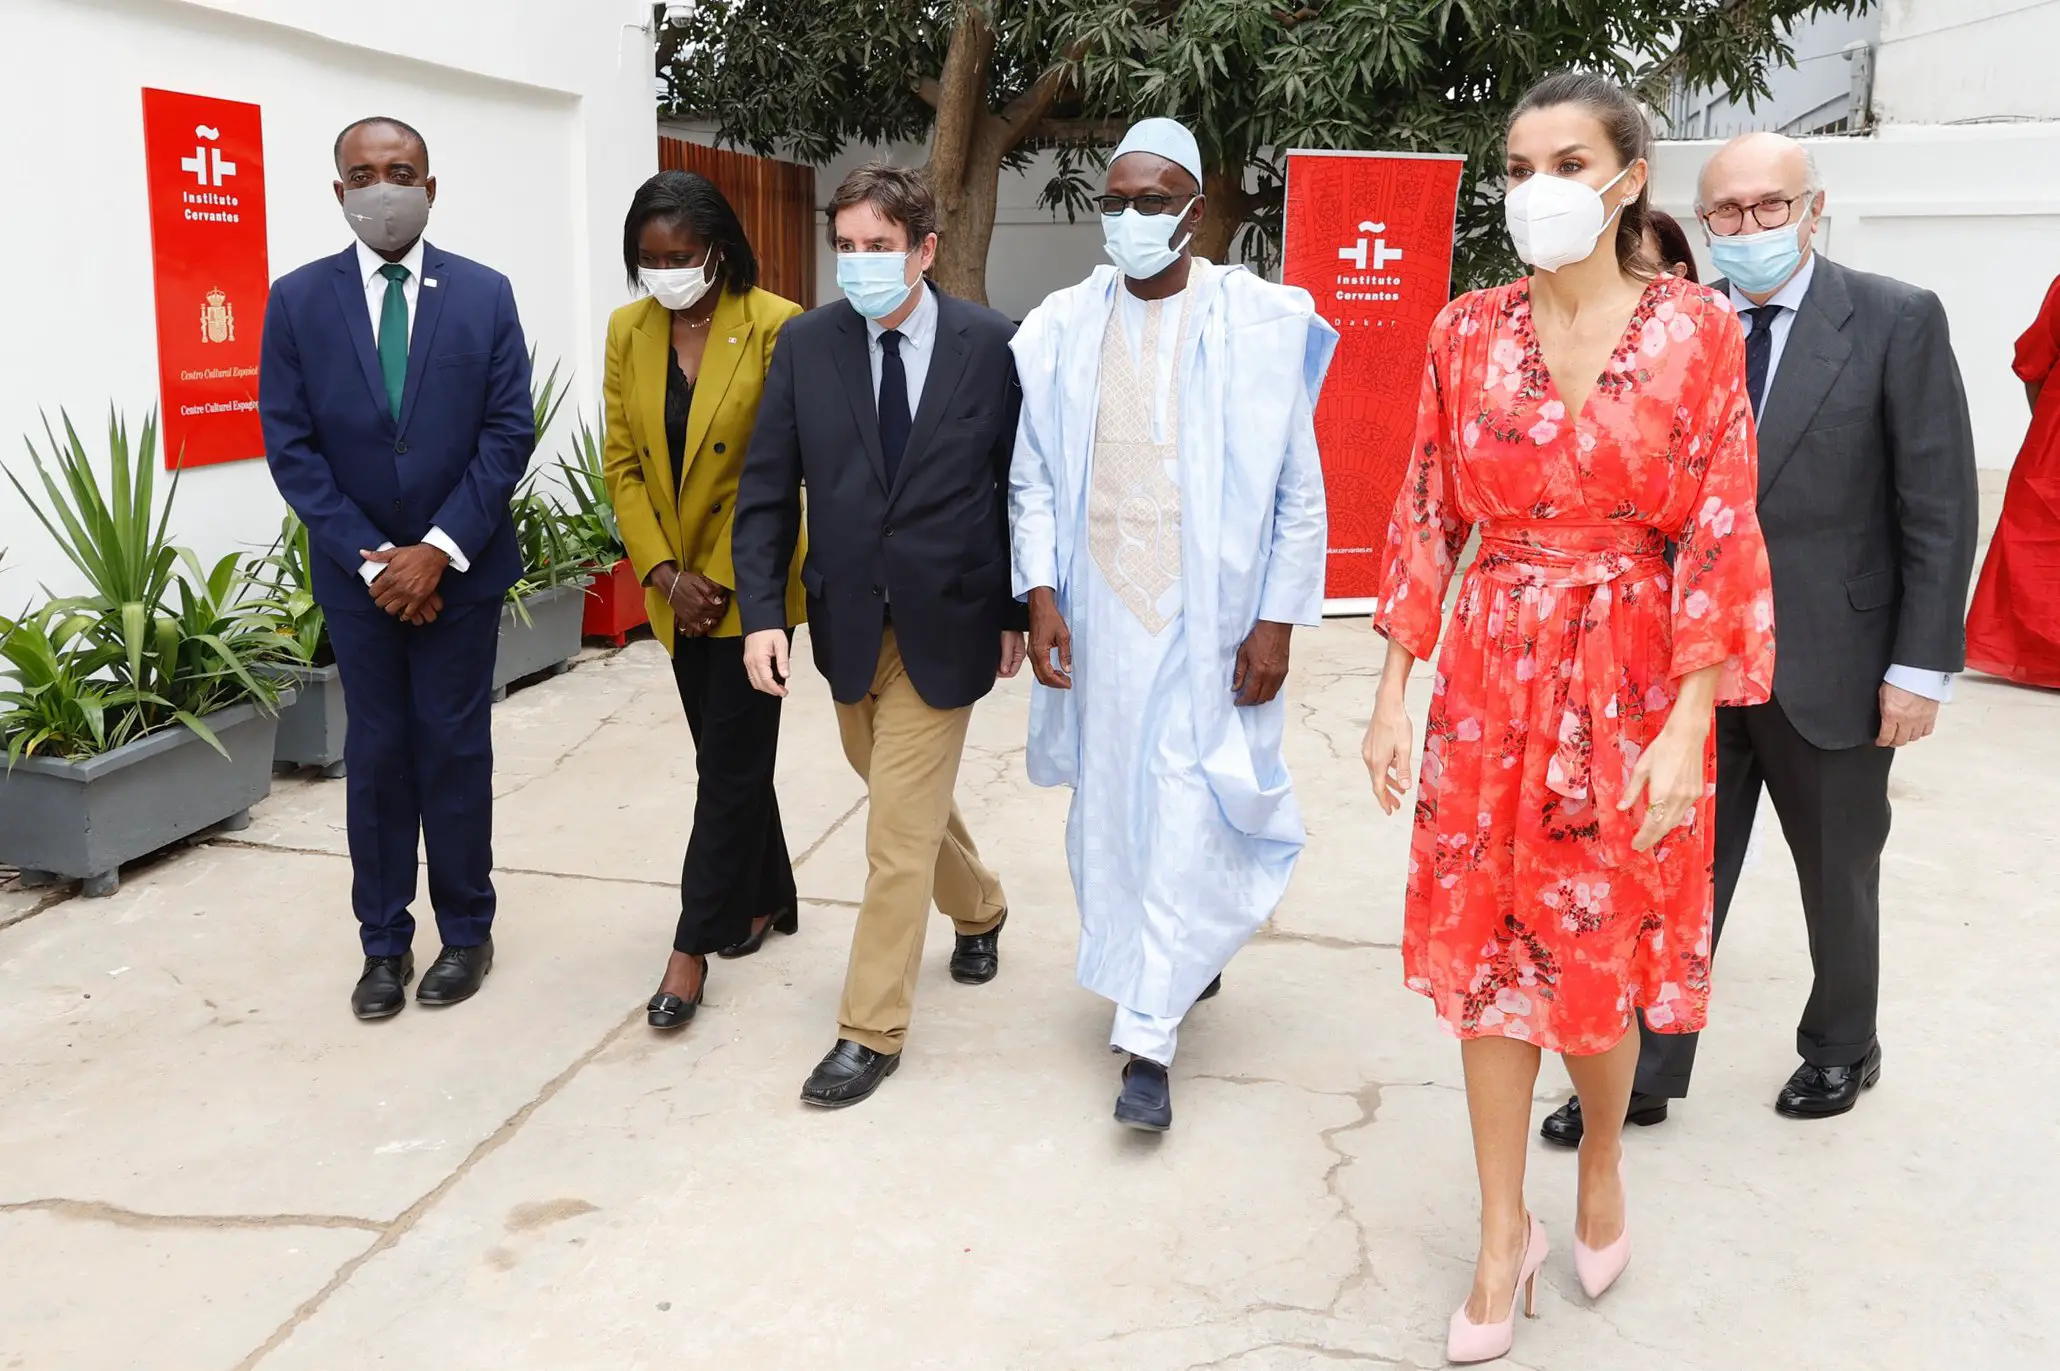 Queen Letizia opened Cervantes Institute in Senegal